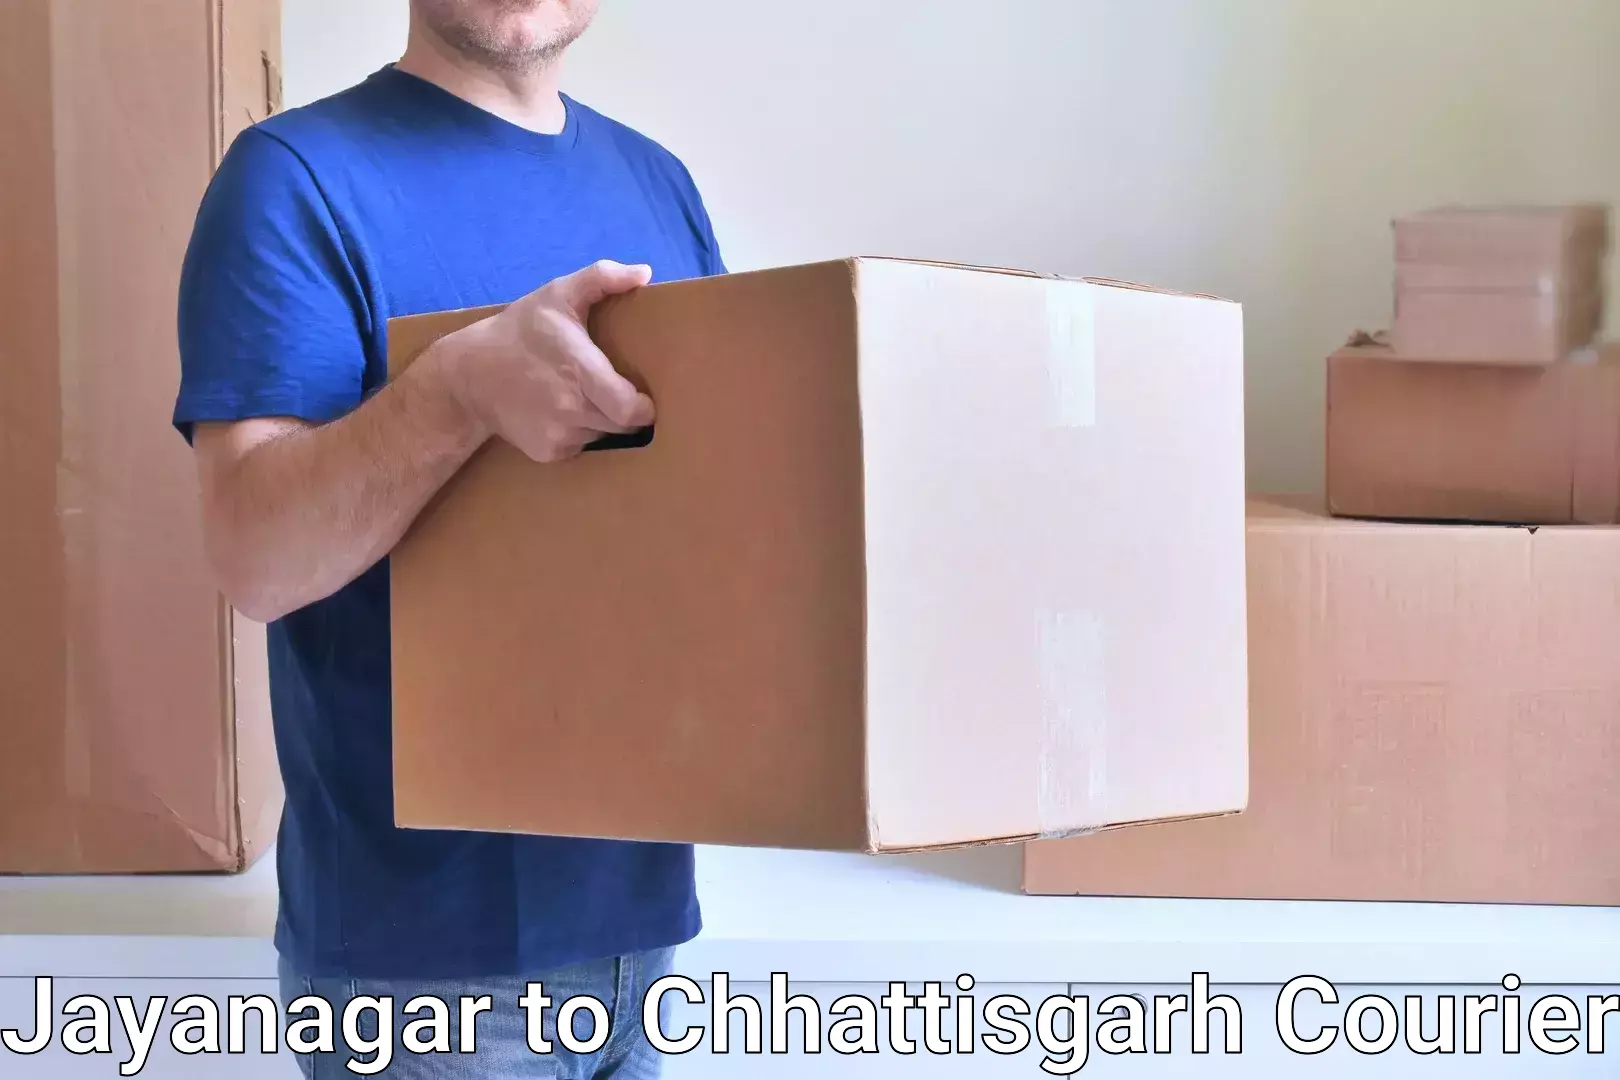 Business courier solutions Jayanagar to Bijapur Chhattisgarh